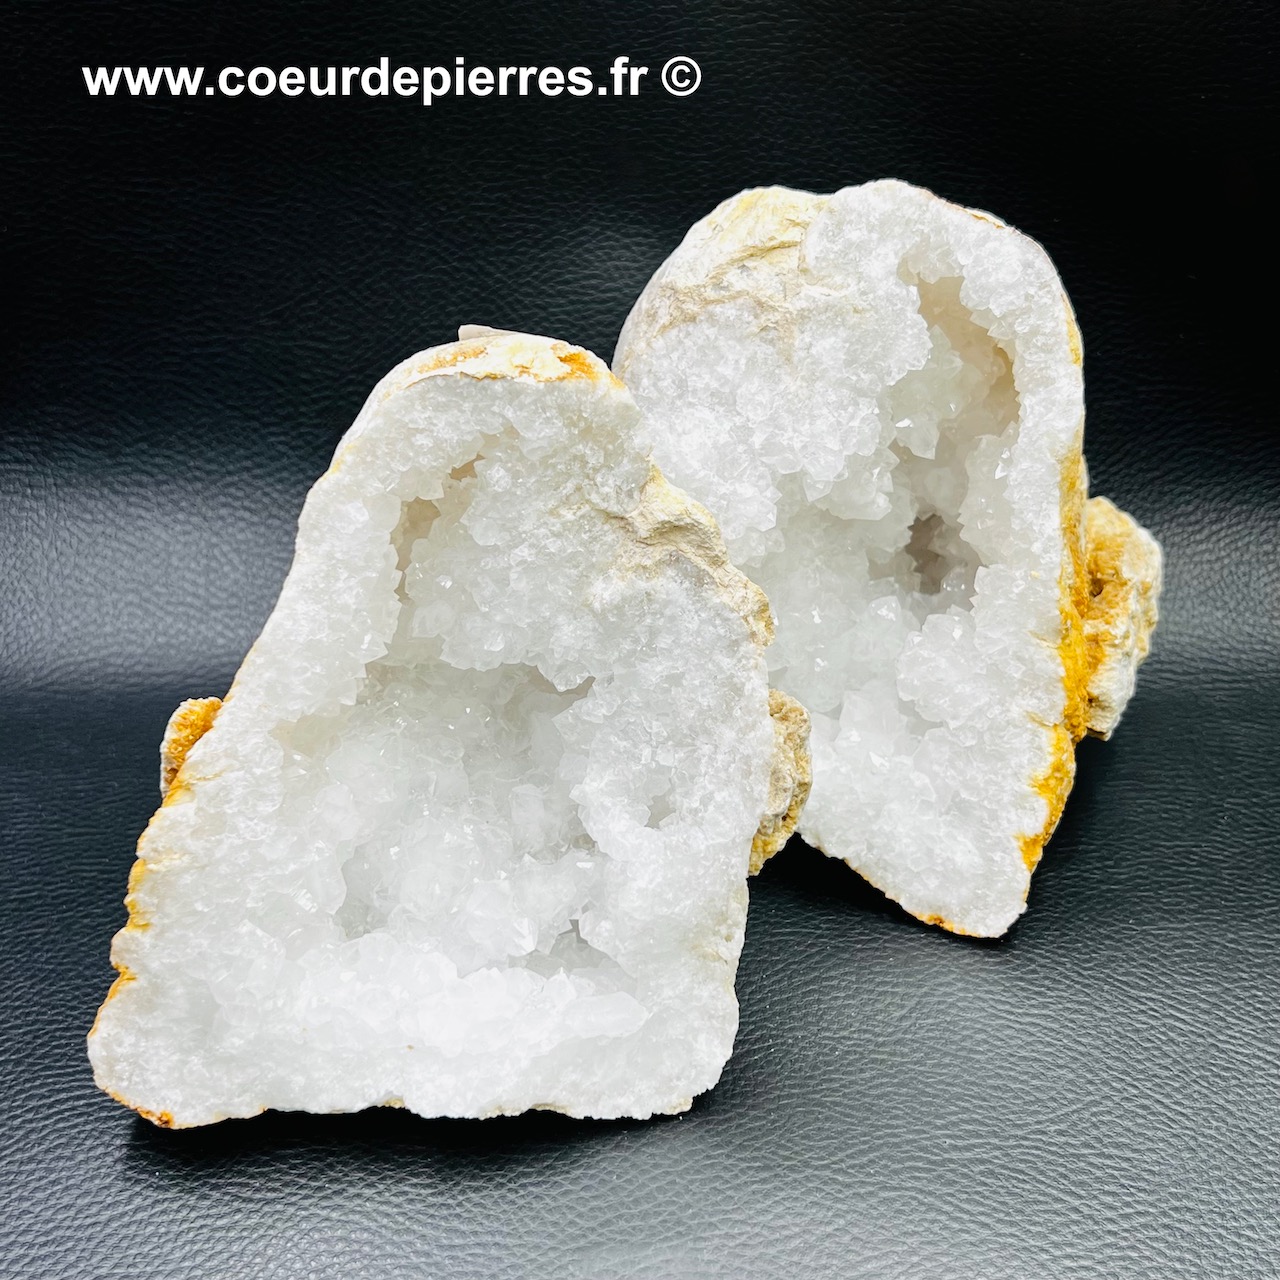 Géode de cristal de roche du Maroc de 2,720kg (réf gcr4)